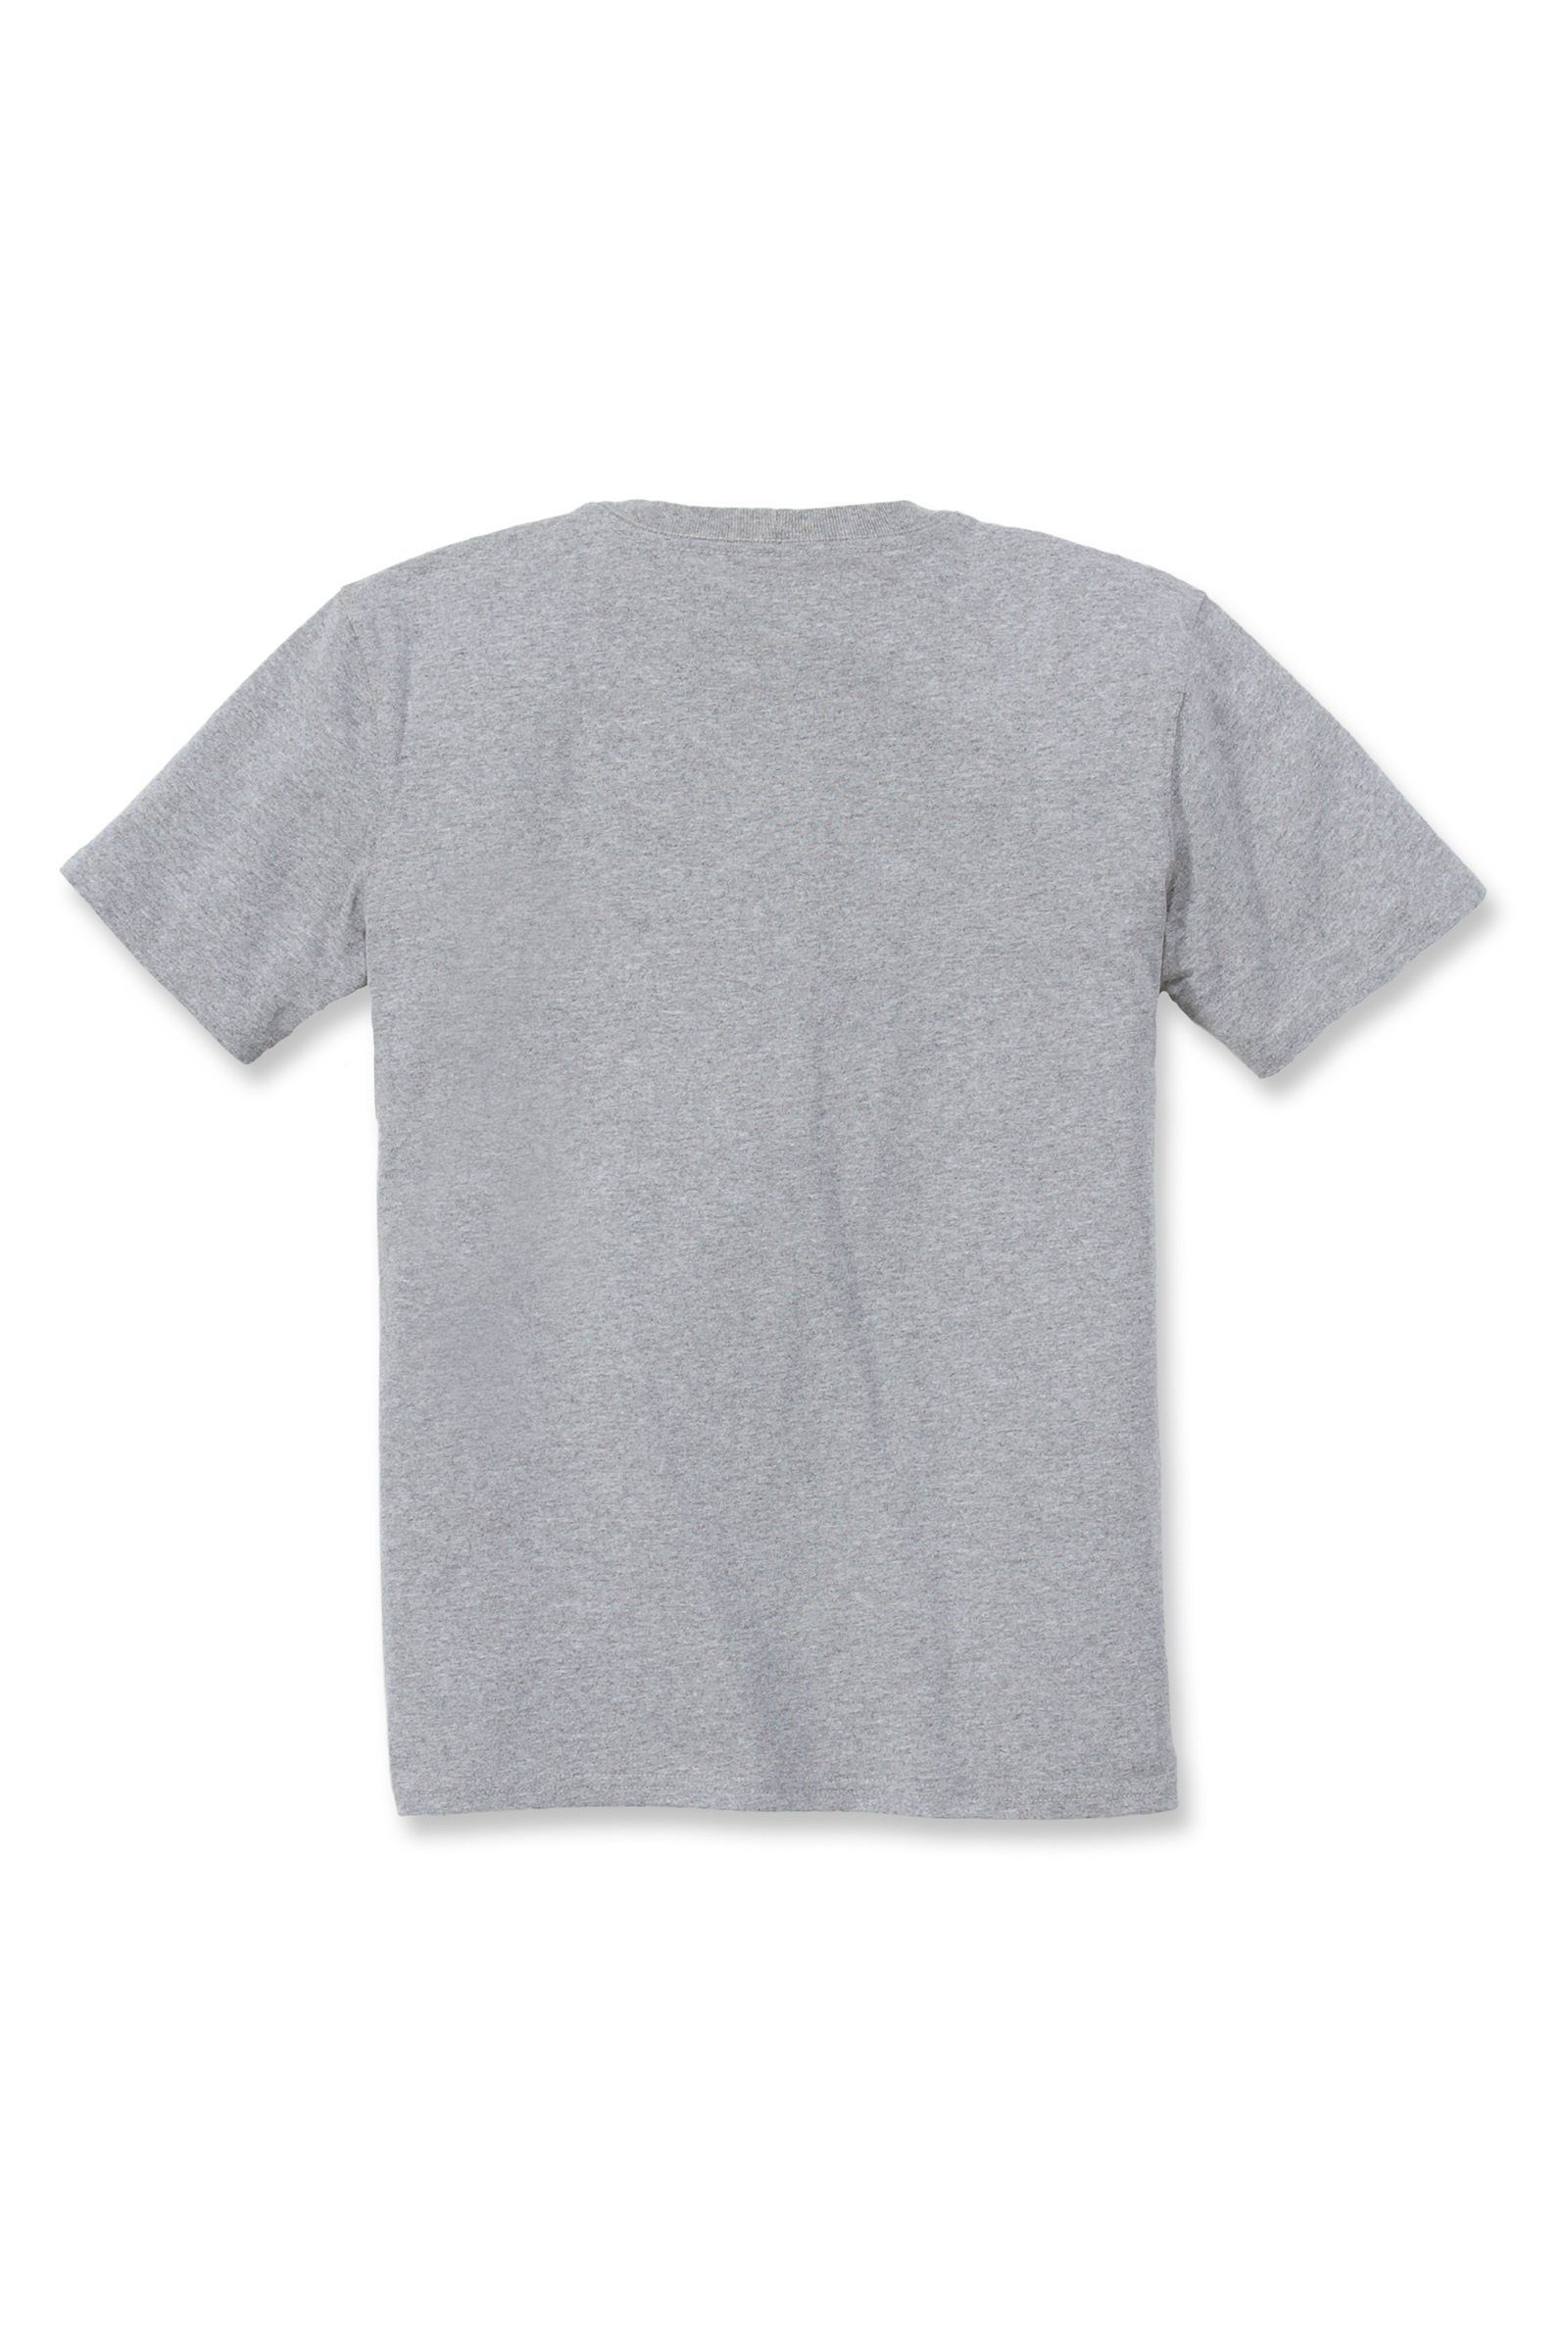 Carhartt T-Shirt Carhartt Damen Adult Fit grey Short-Sleeve Heavyweight heather T-Shirt Pocket Loose